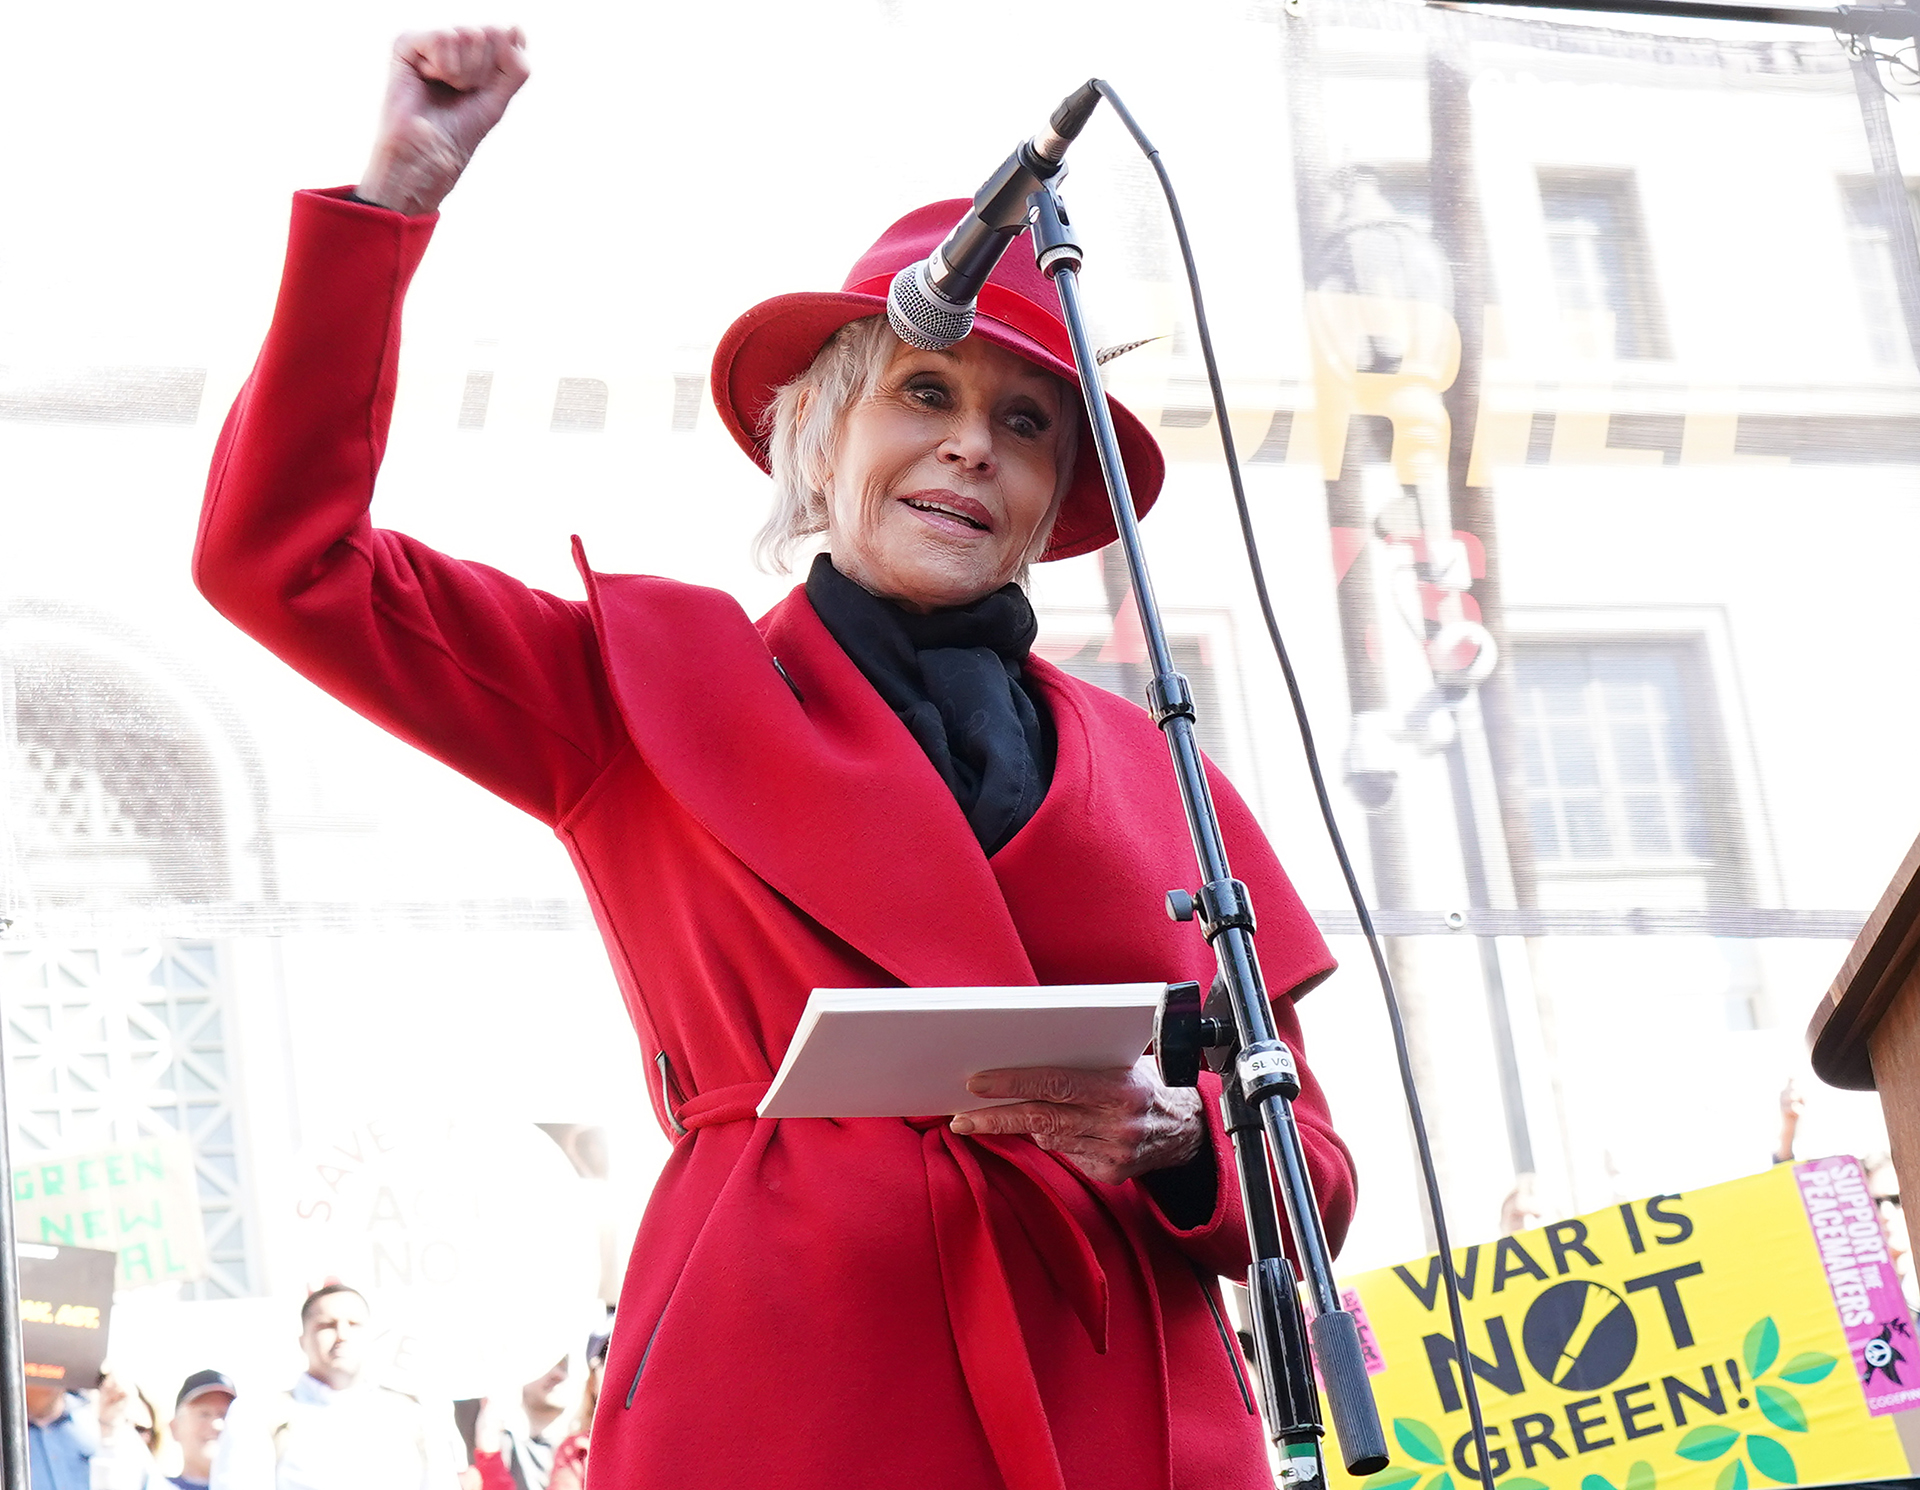 En 2019, habiendo pasado ya sus 80 años, se decidió a ir presa cada viernes con el mismo tapado rojo para protestar por el cambio climático (Rachel Luna/Getty Images)